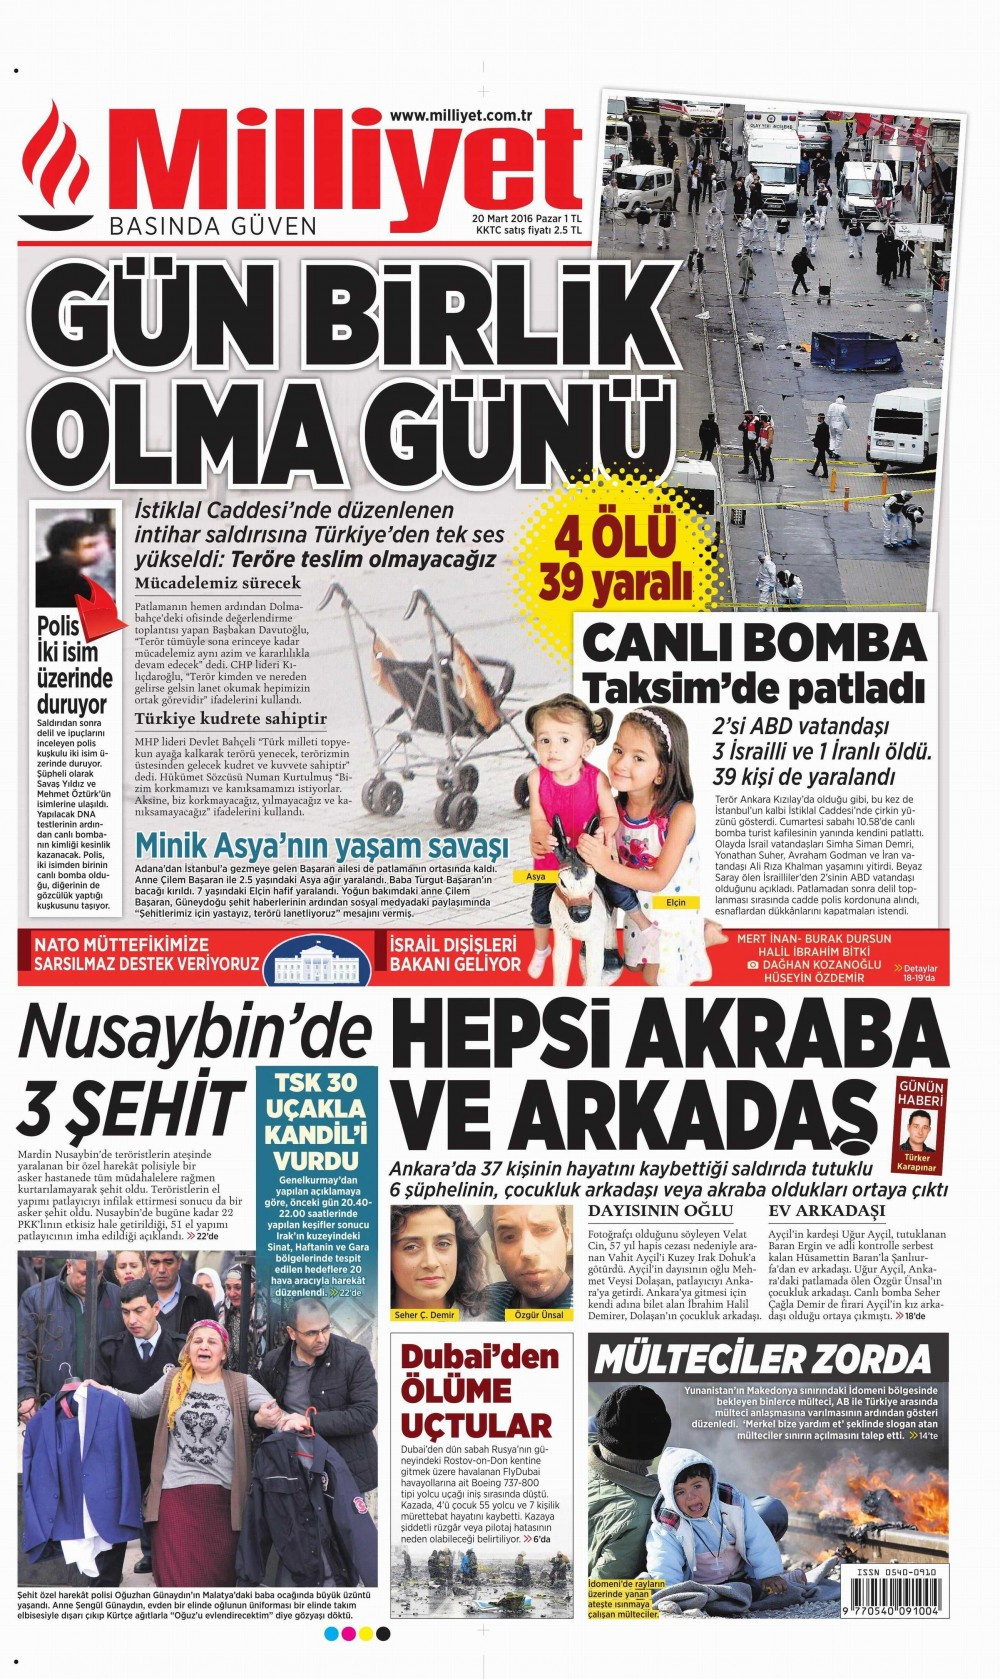 Gazete manşetleri Hürriyet - Sözcü ve Sabah ne yazdı?